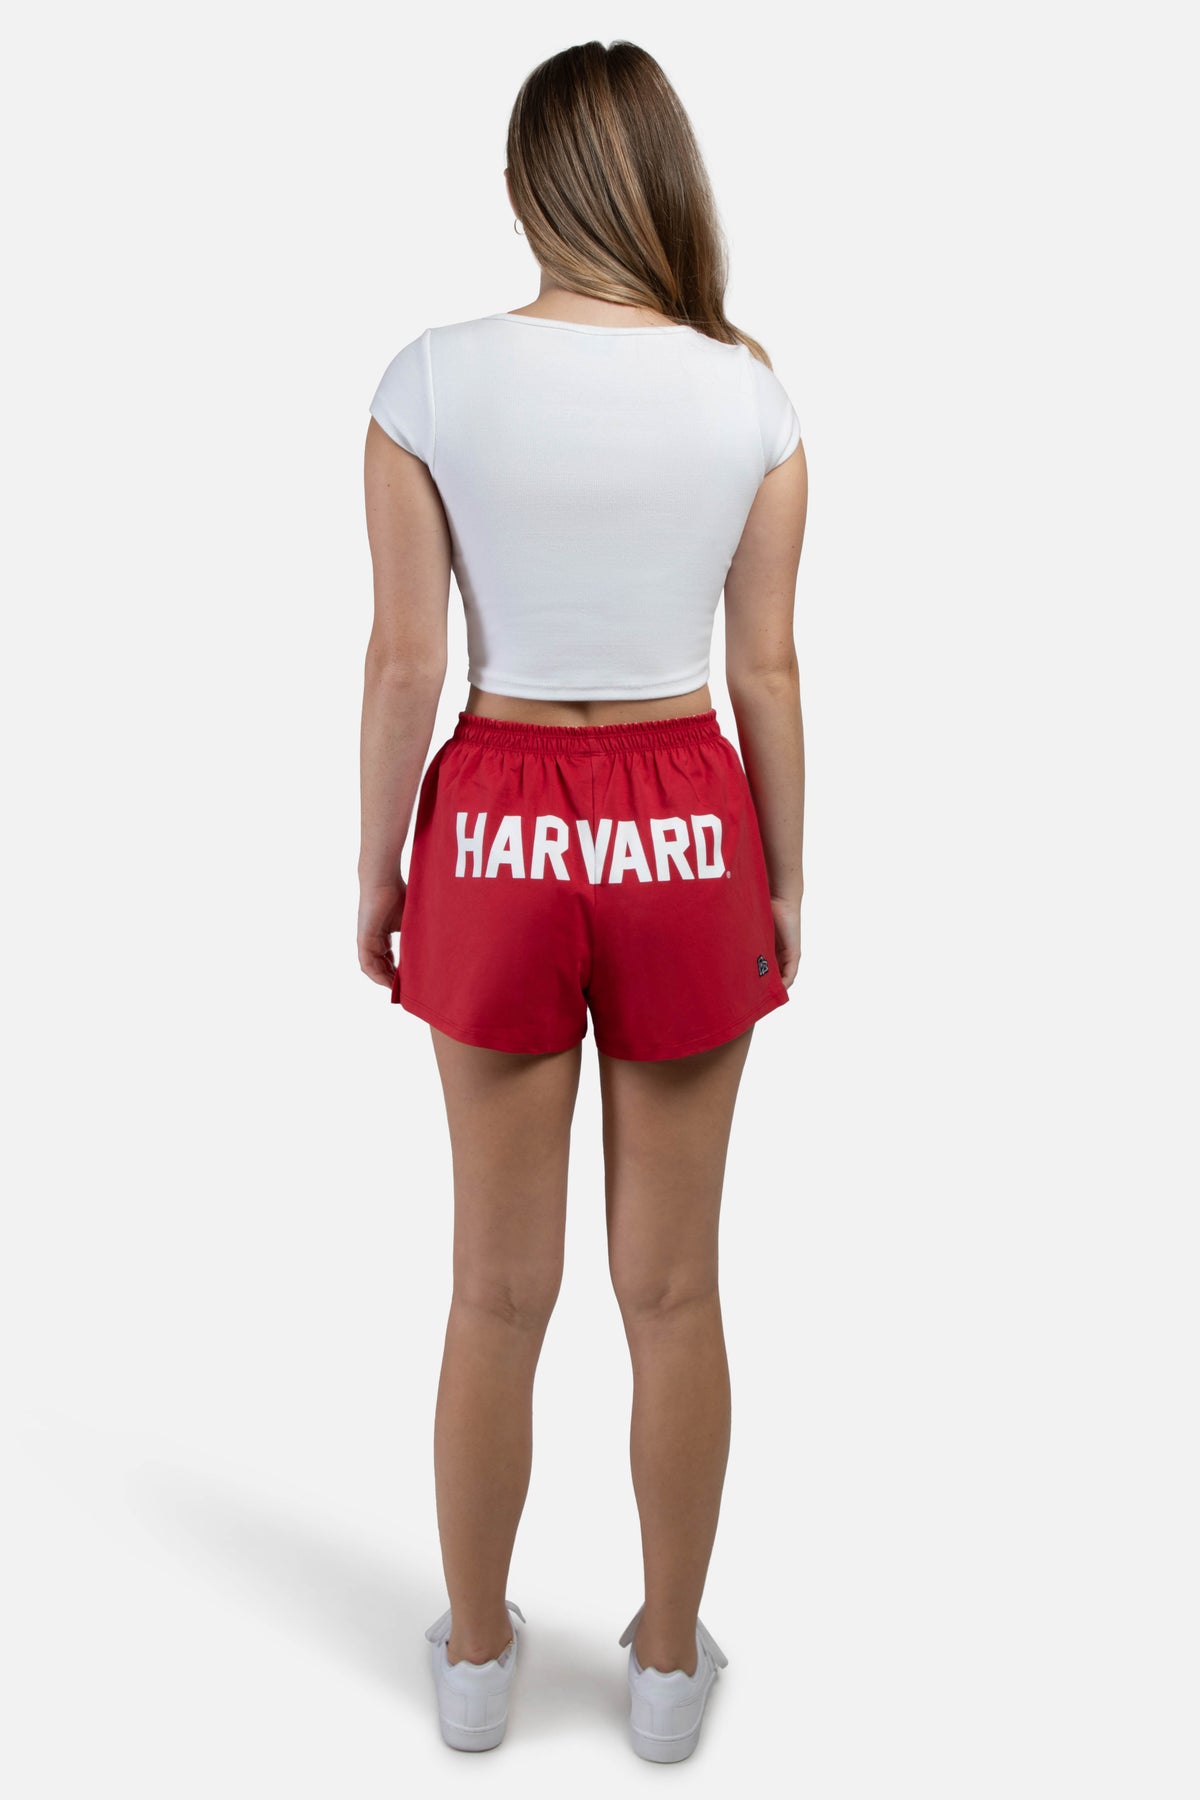 Harvard P.E. Shorts